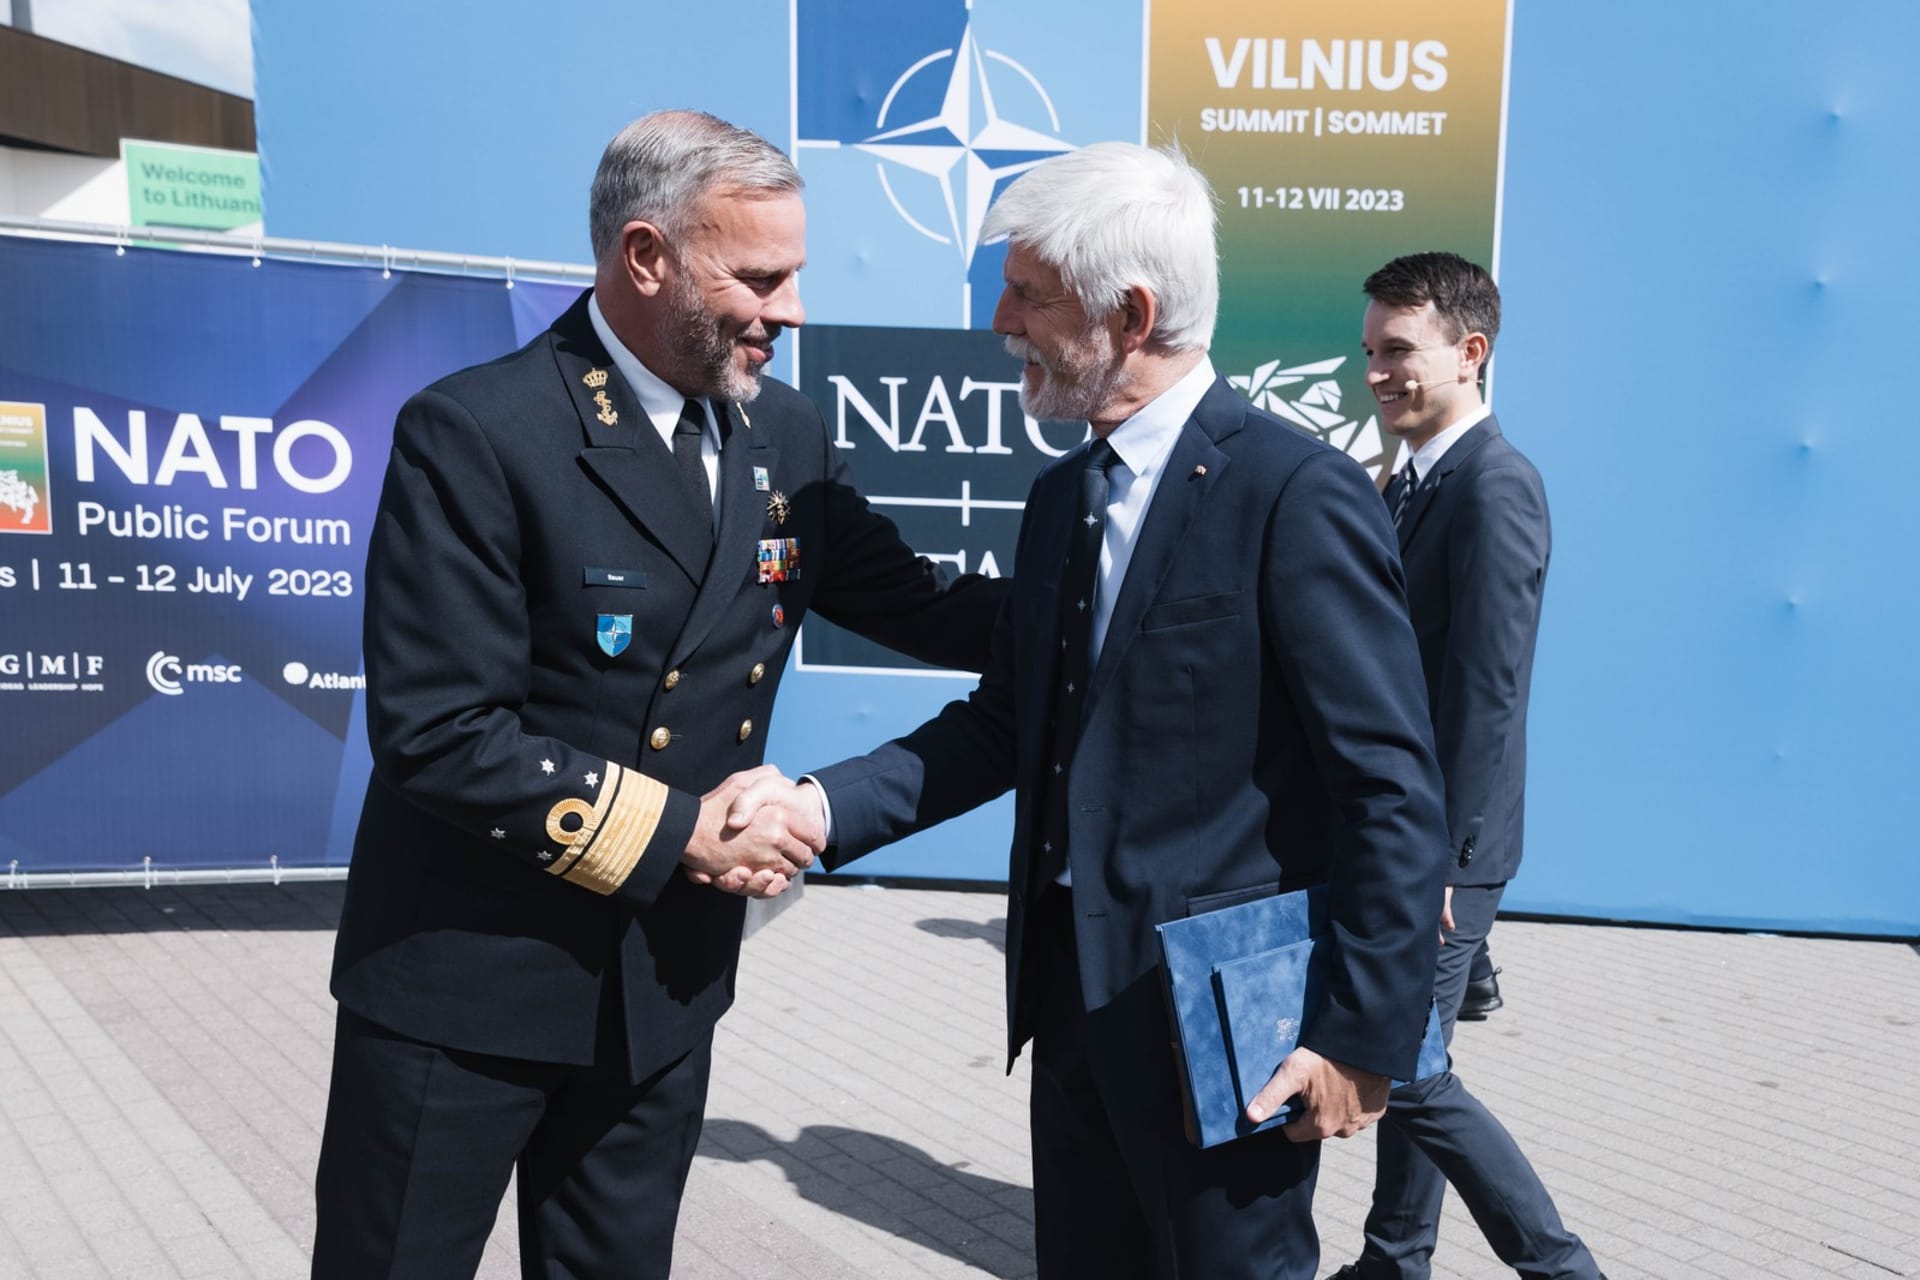 Český prezident Petr Pavel při setkání s nynějším předsedou Vojenského výboru NATO Robem Bauerem